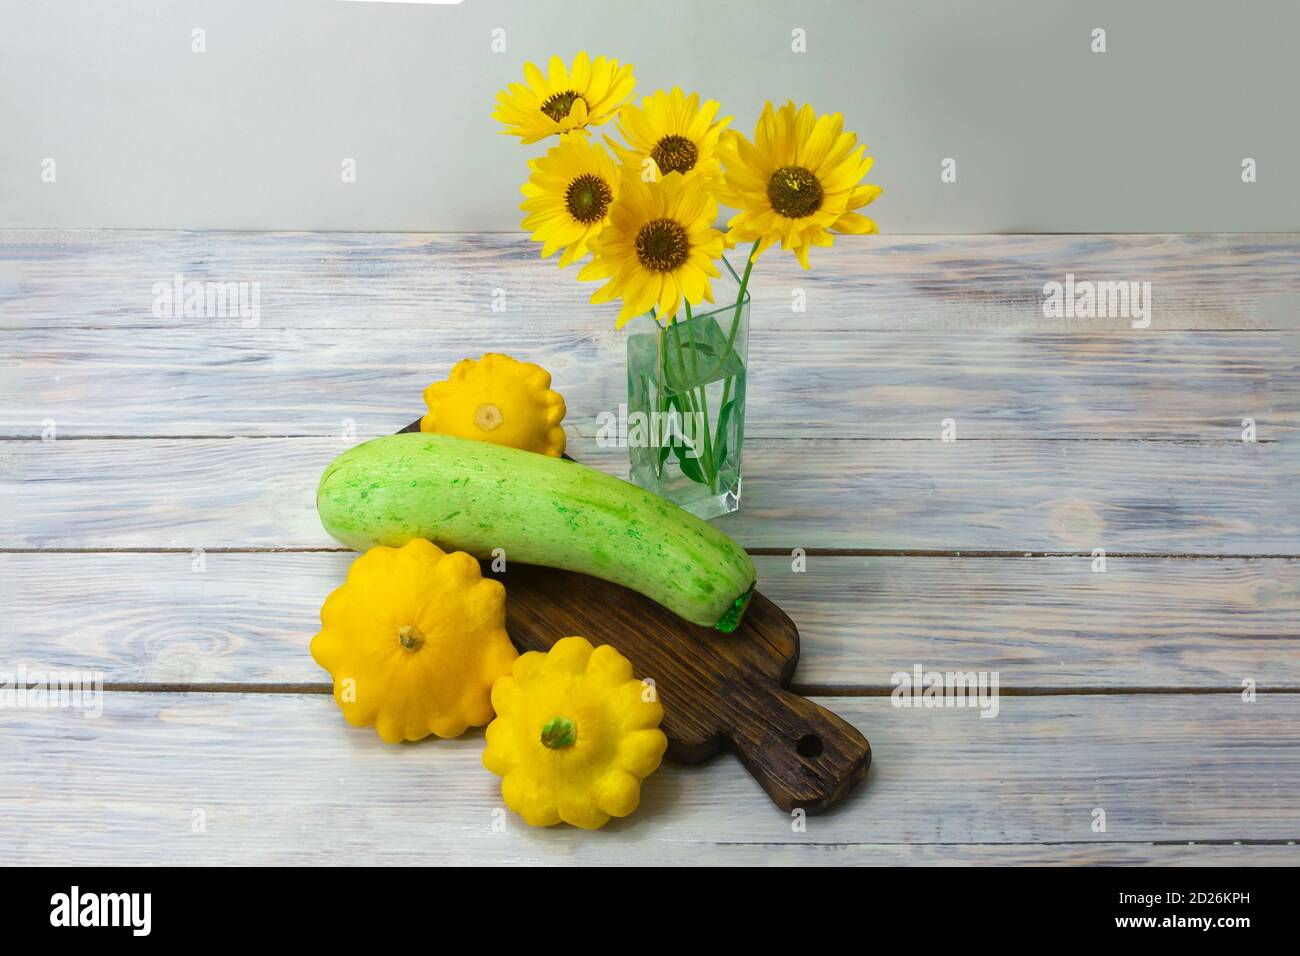 La courge verte et la mini patty jaune écrasez sur une table en bois. Belles fleurs jaunes dans un vase en verre. Banque D'Images